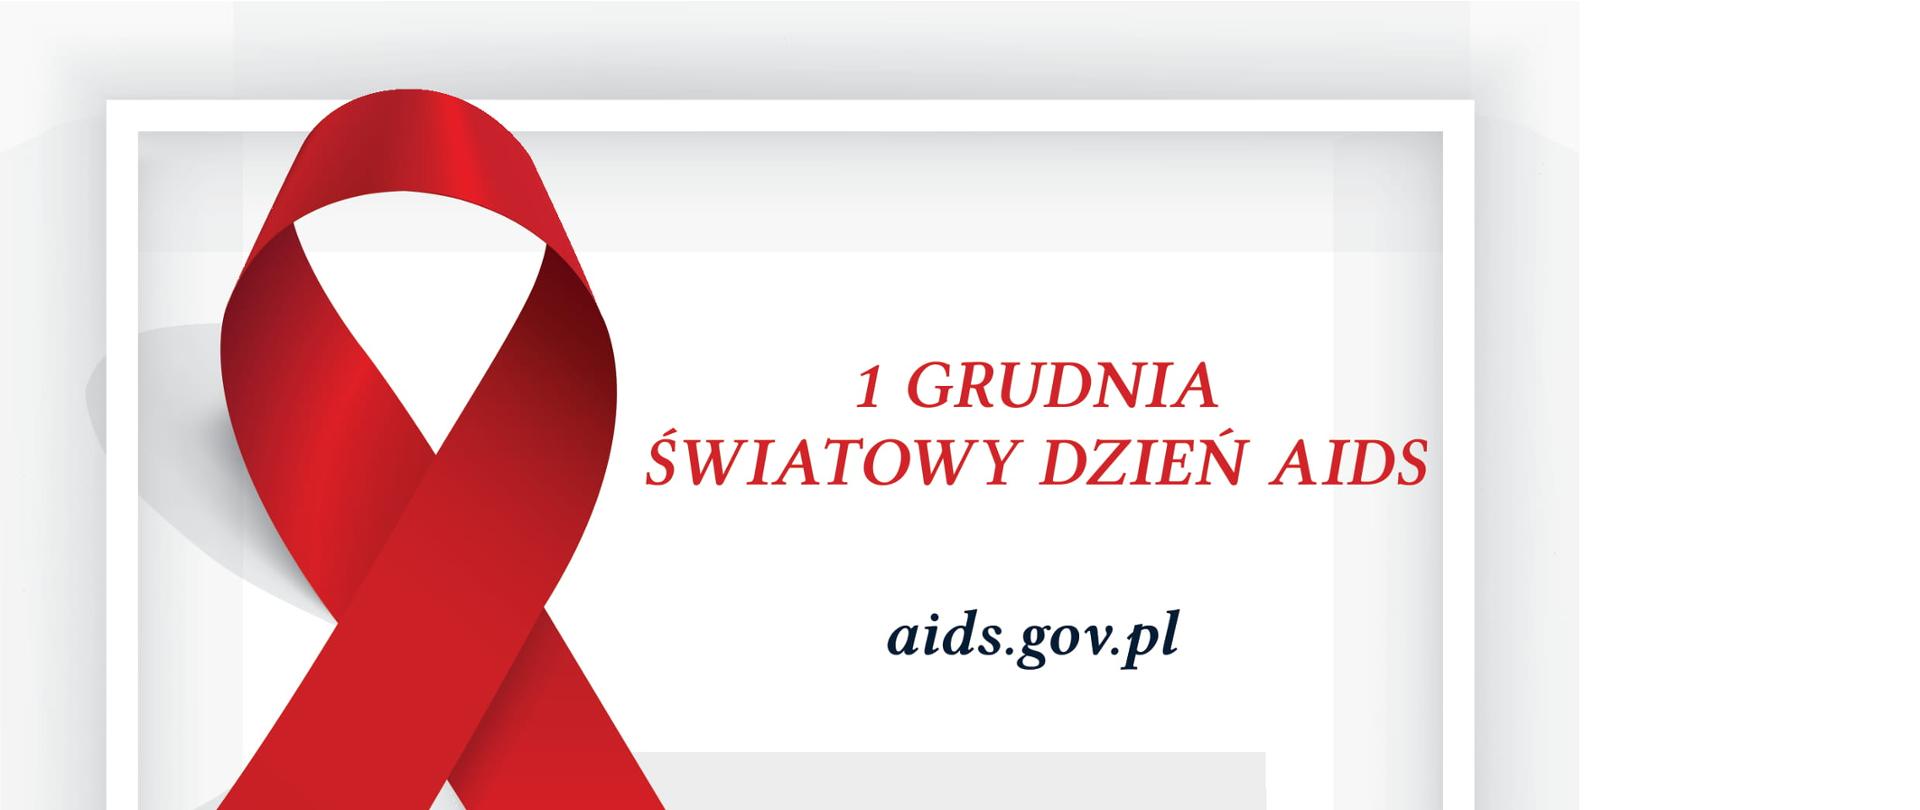 Biało szara plansza z czerową wstążką i napisem "1 grudnia Światowy Dzień Aids" oraz adresem strony aids.gov.pl